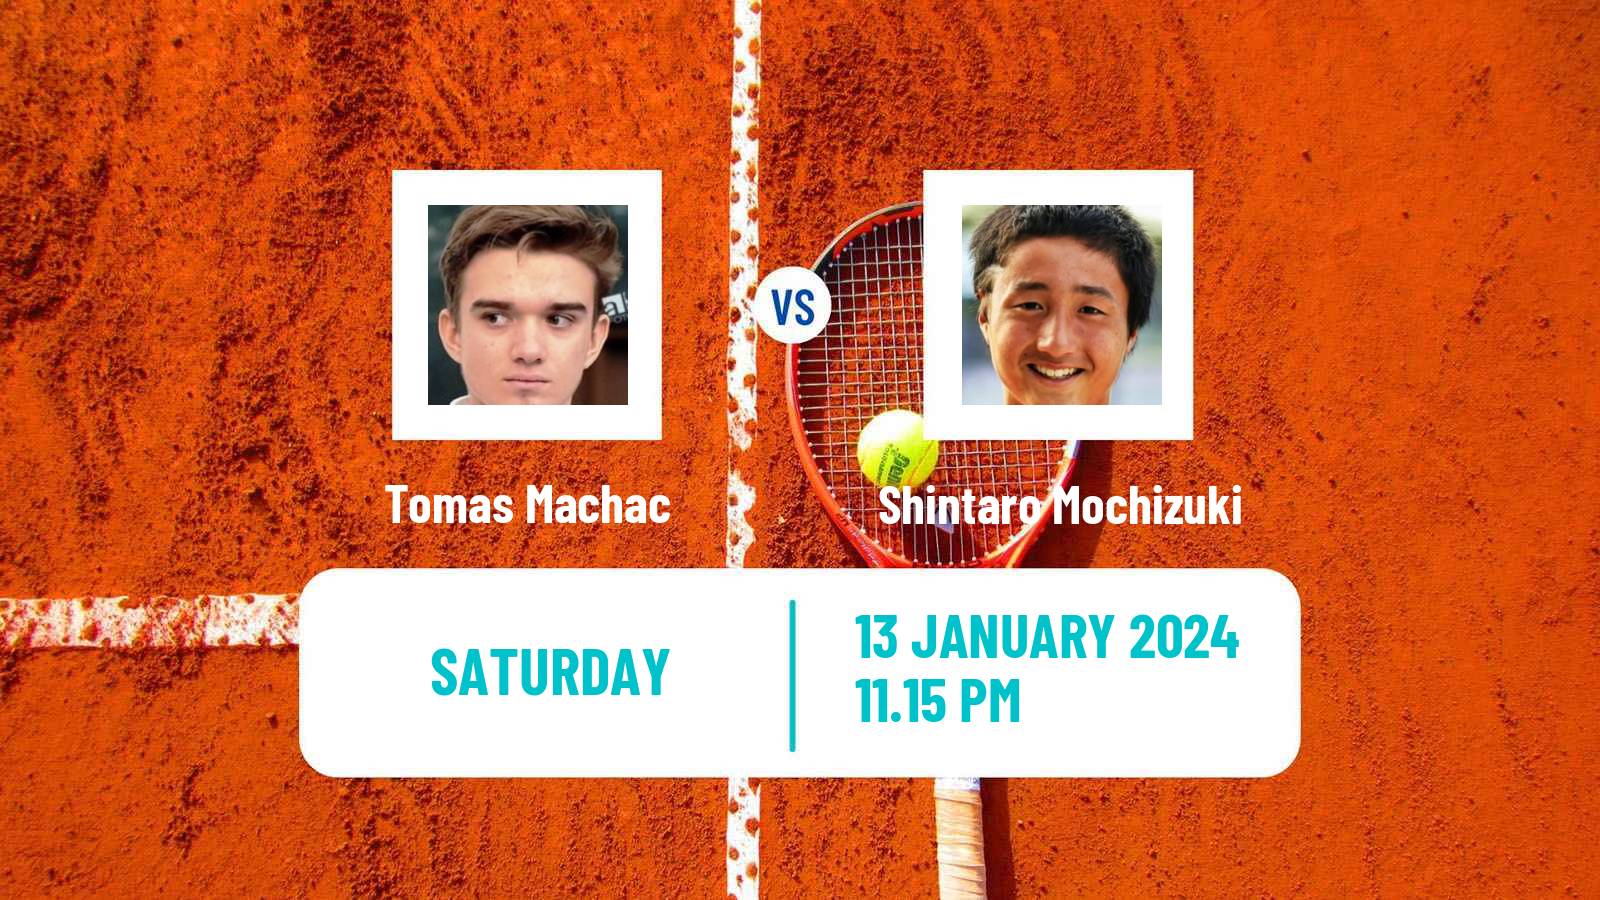 Tennis ATP Australian Open Tomas Machac - Shintaro Mochizuki